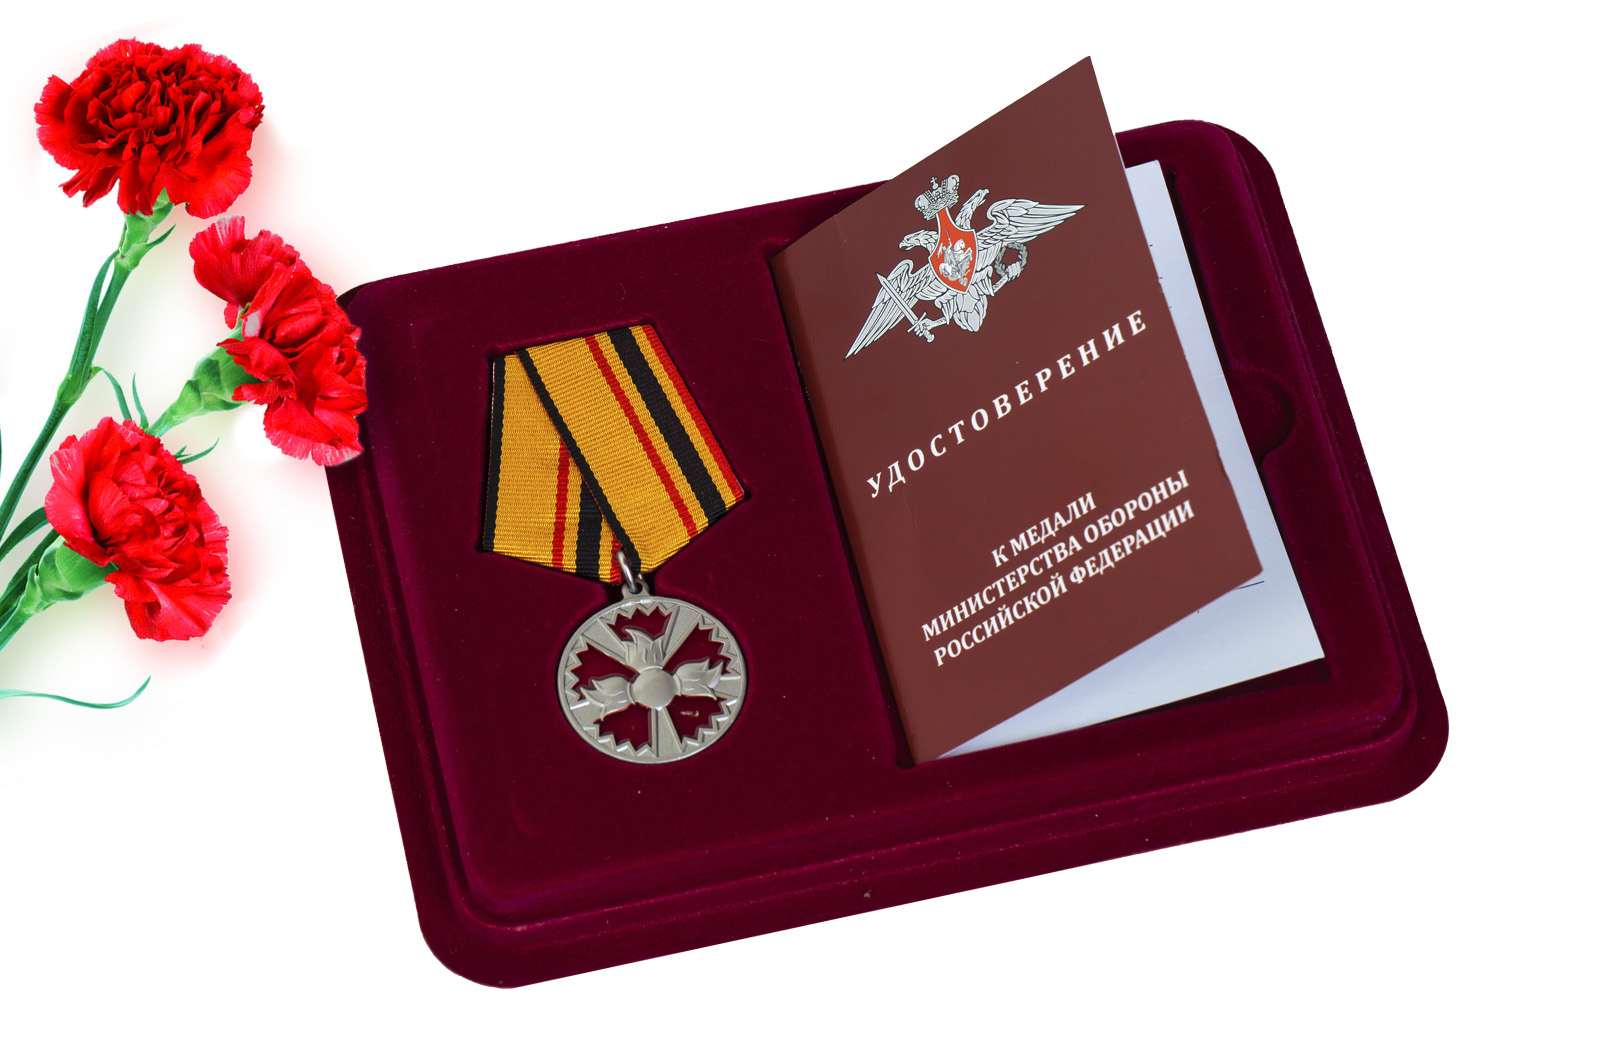 Купить медаль ГРУ За заслуги в специальной деятельности онлайн выгодно